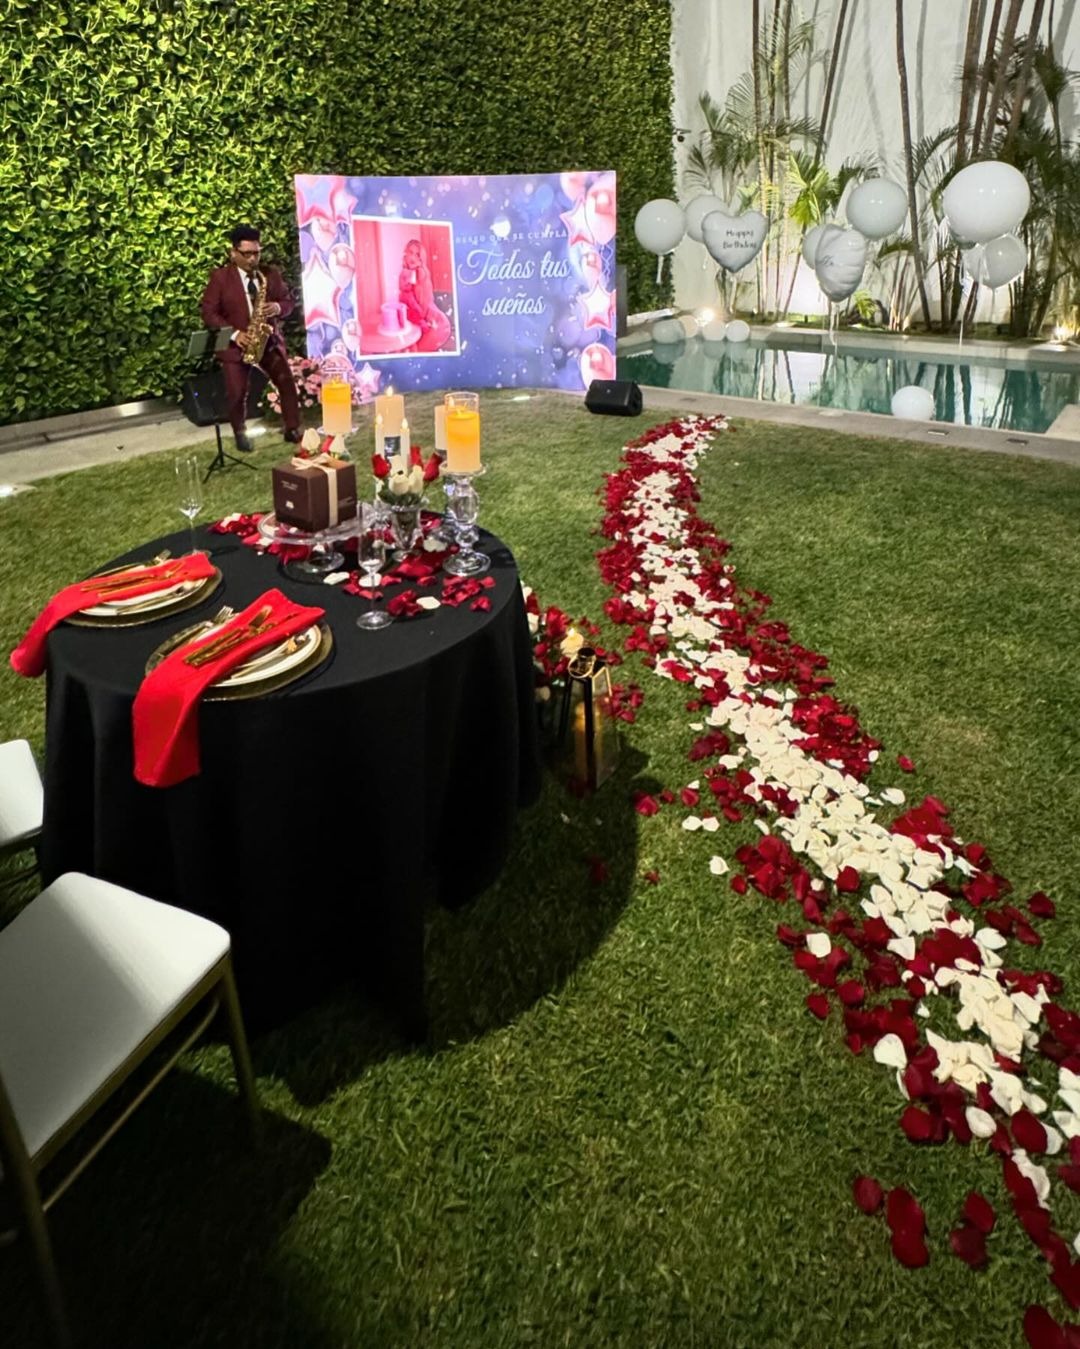 Richard Acuña ambientó la cena romántica con una alfombra de péstalos de rosa que indicó el camino para la celebración/Foto: Instagarm